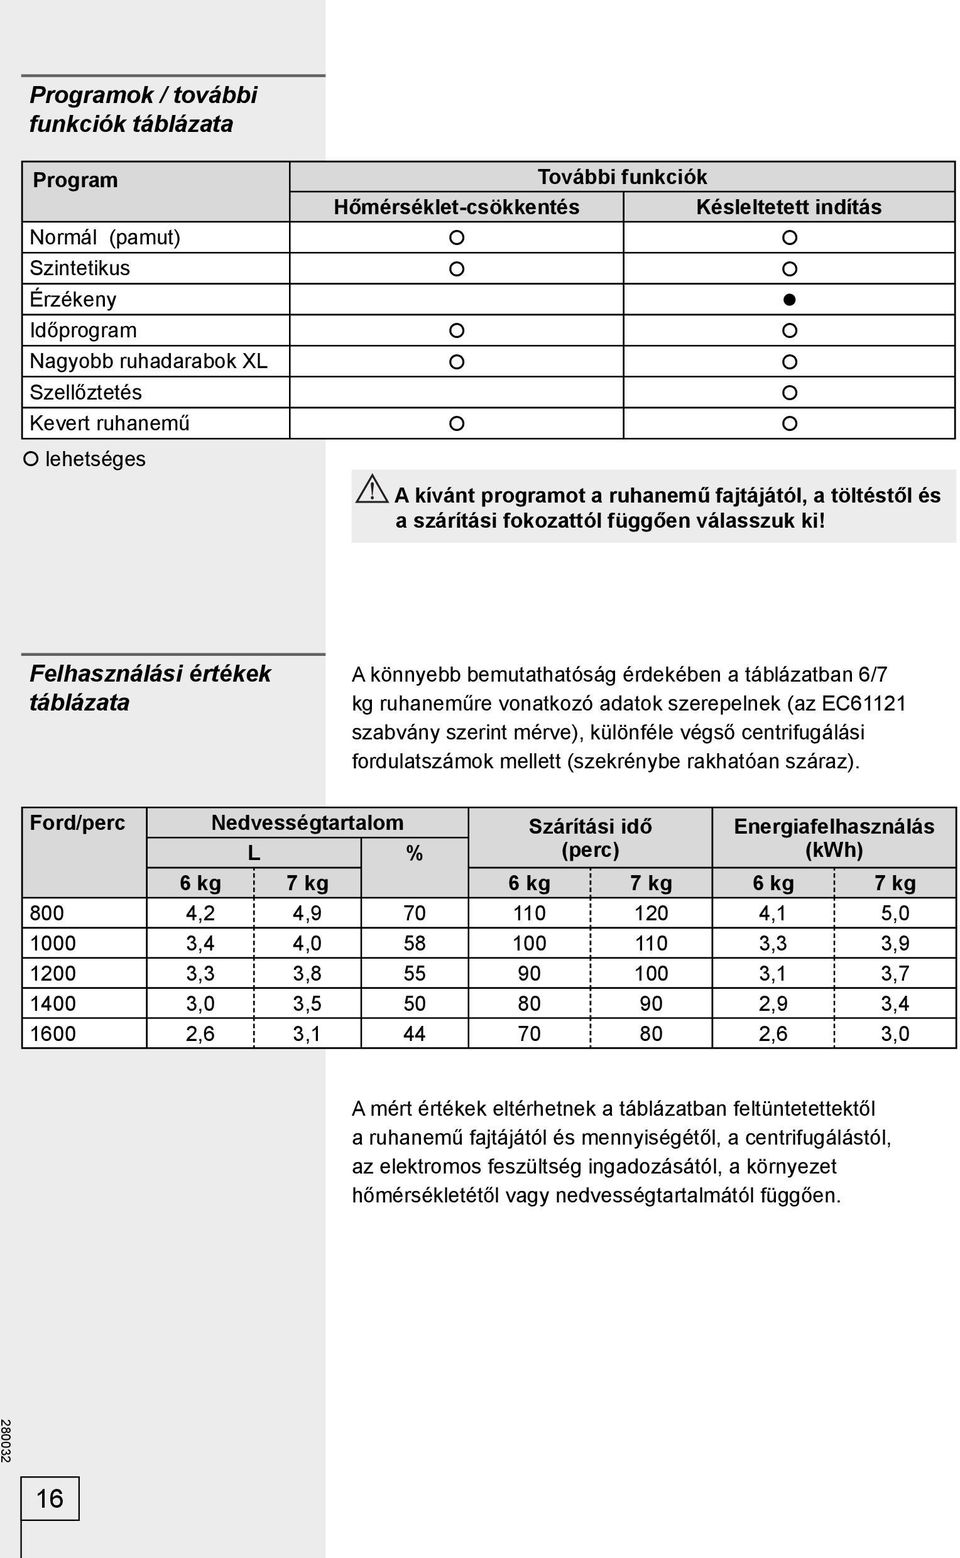 Felhasználási értékek táblázata A könnyebb bemutathatóság érdekében a táblázatban 6/7 kg ruhaneműre vonatkozó adatok szerepelnek (az EC61121 szabvány szerint mérve), különféle végső centrifugálási